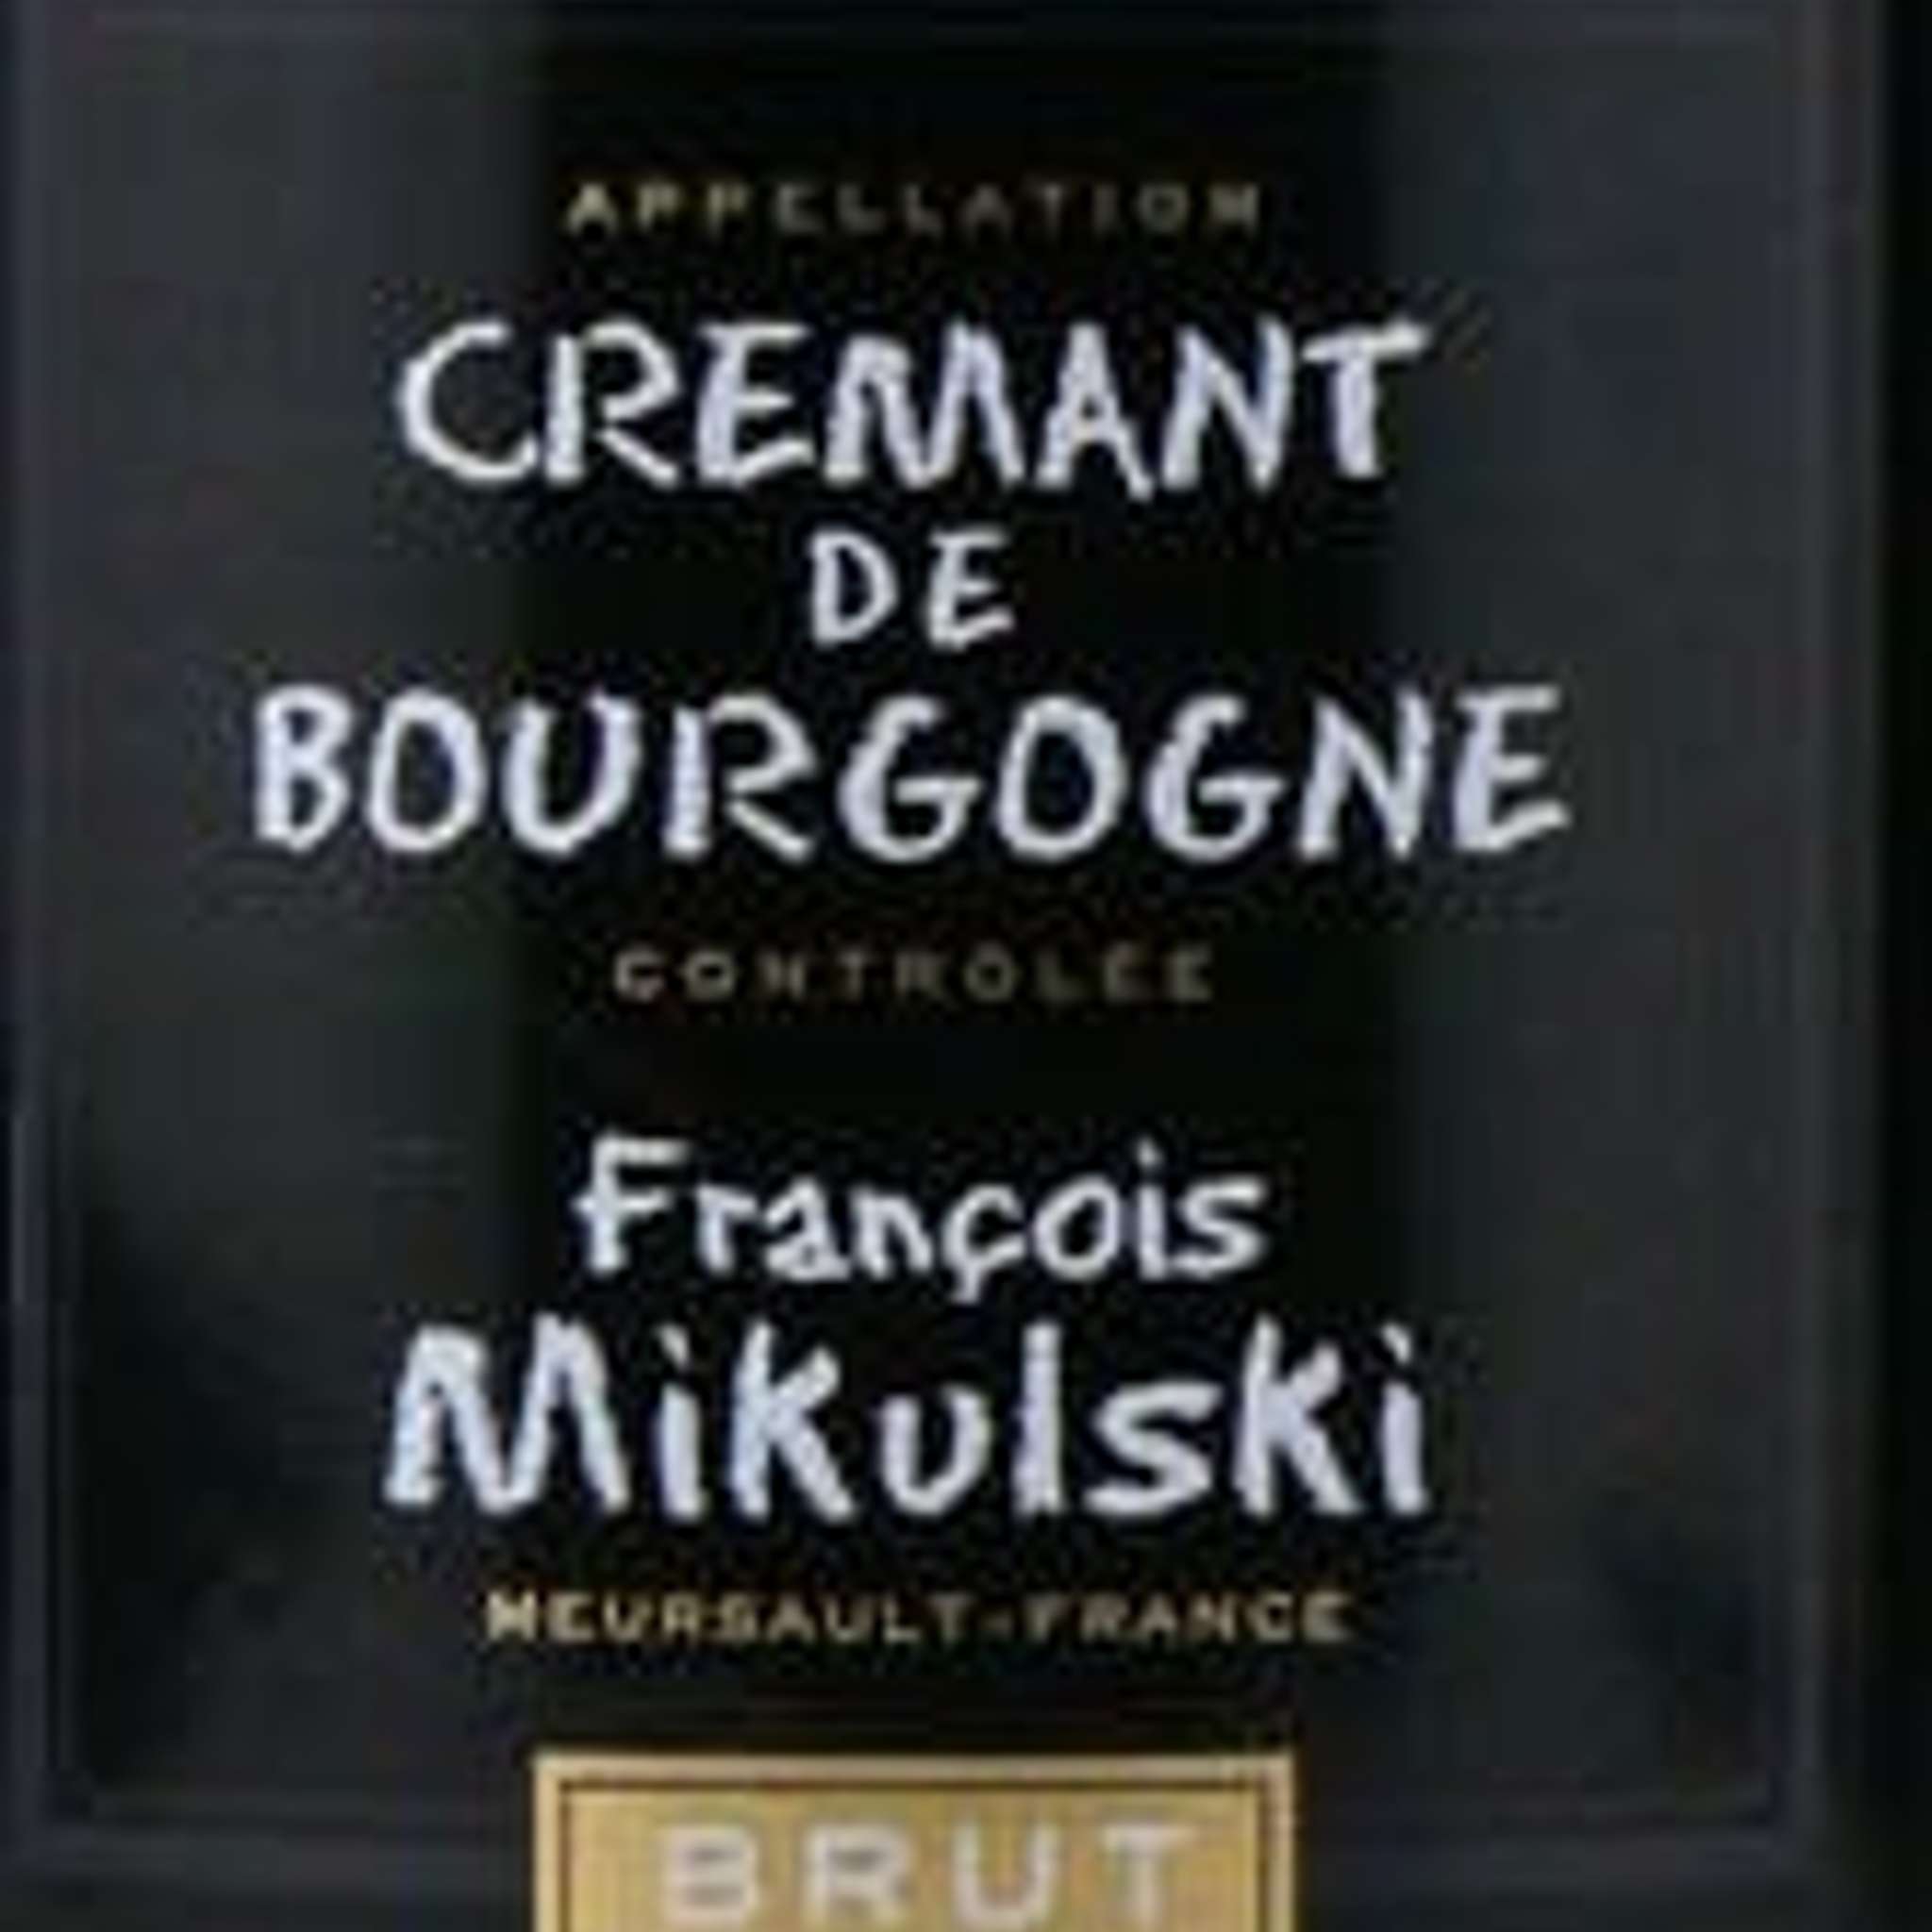 クレマン・ド・ブルゴーニュ／フランソワ・ミクルスキ
Cremat de Bourgogne